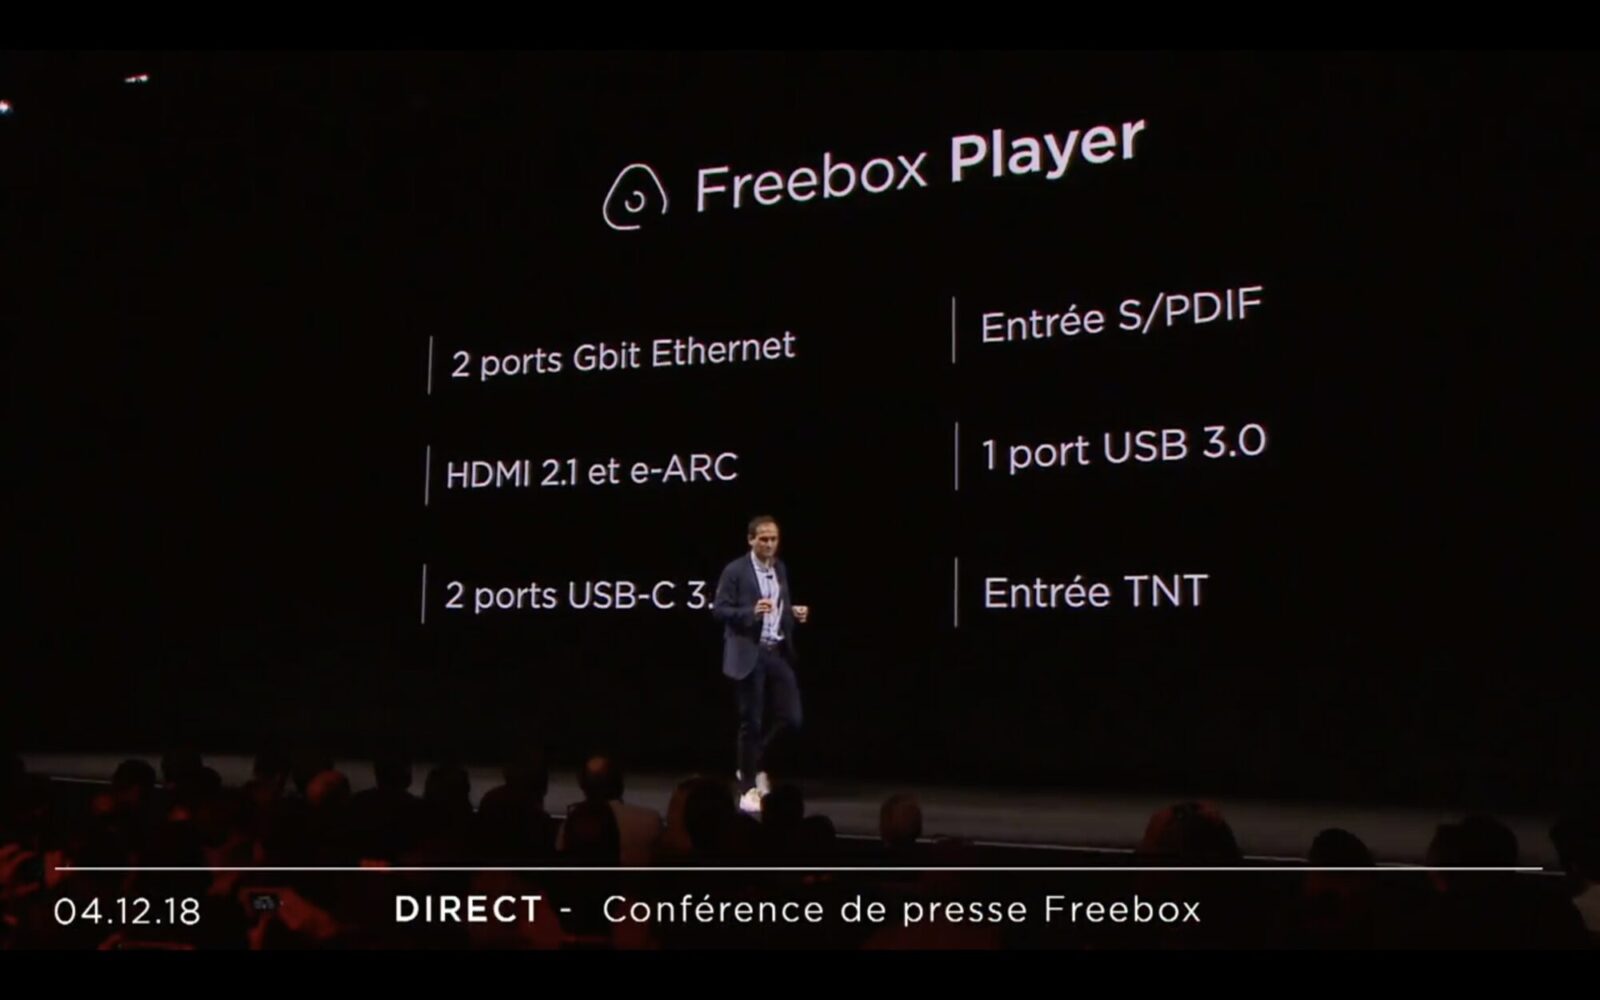 Freebox freeboxplayer2 Conférence Free : Découvrez les nouvelles Freebox en détail ! delta